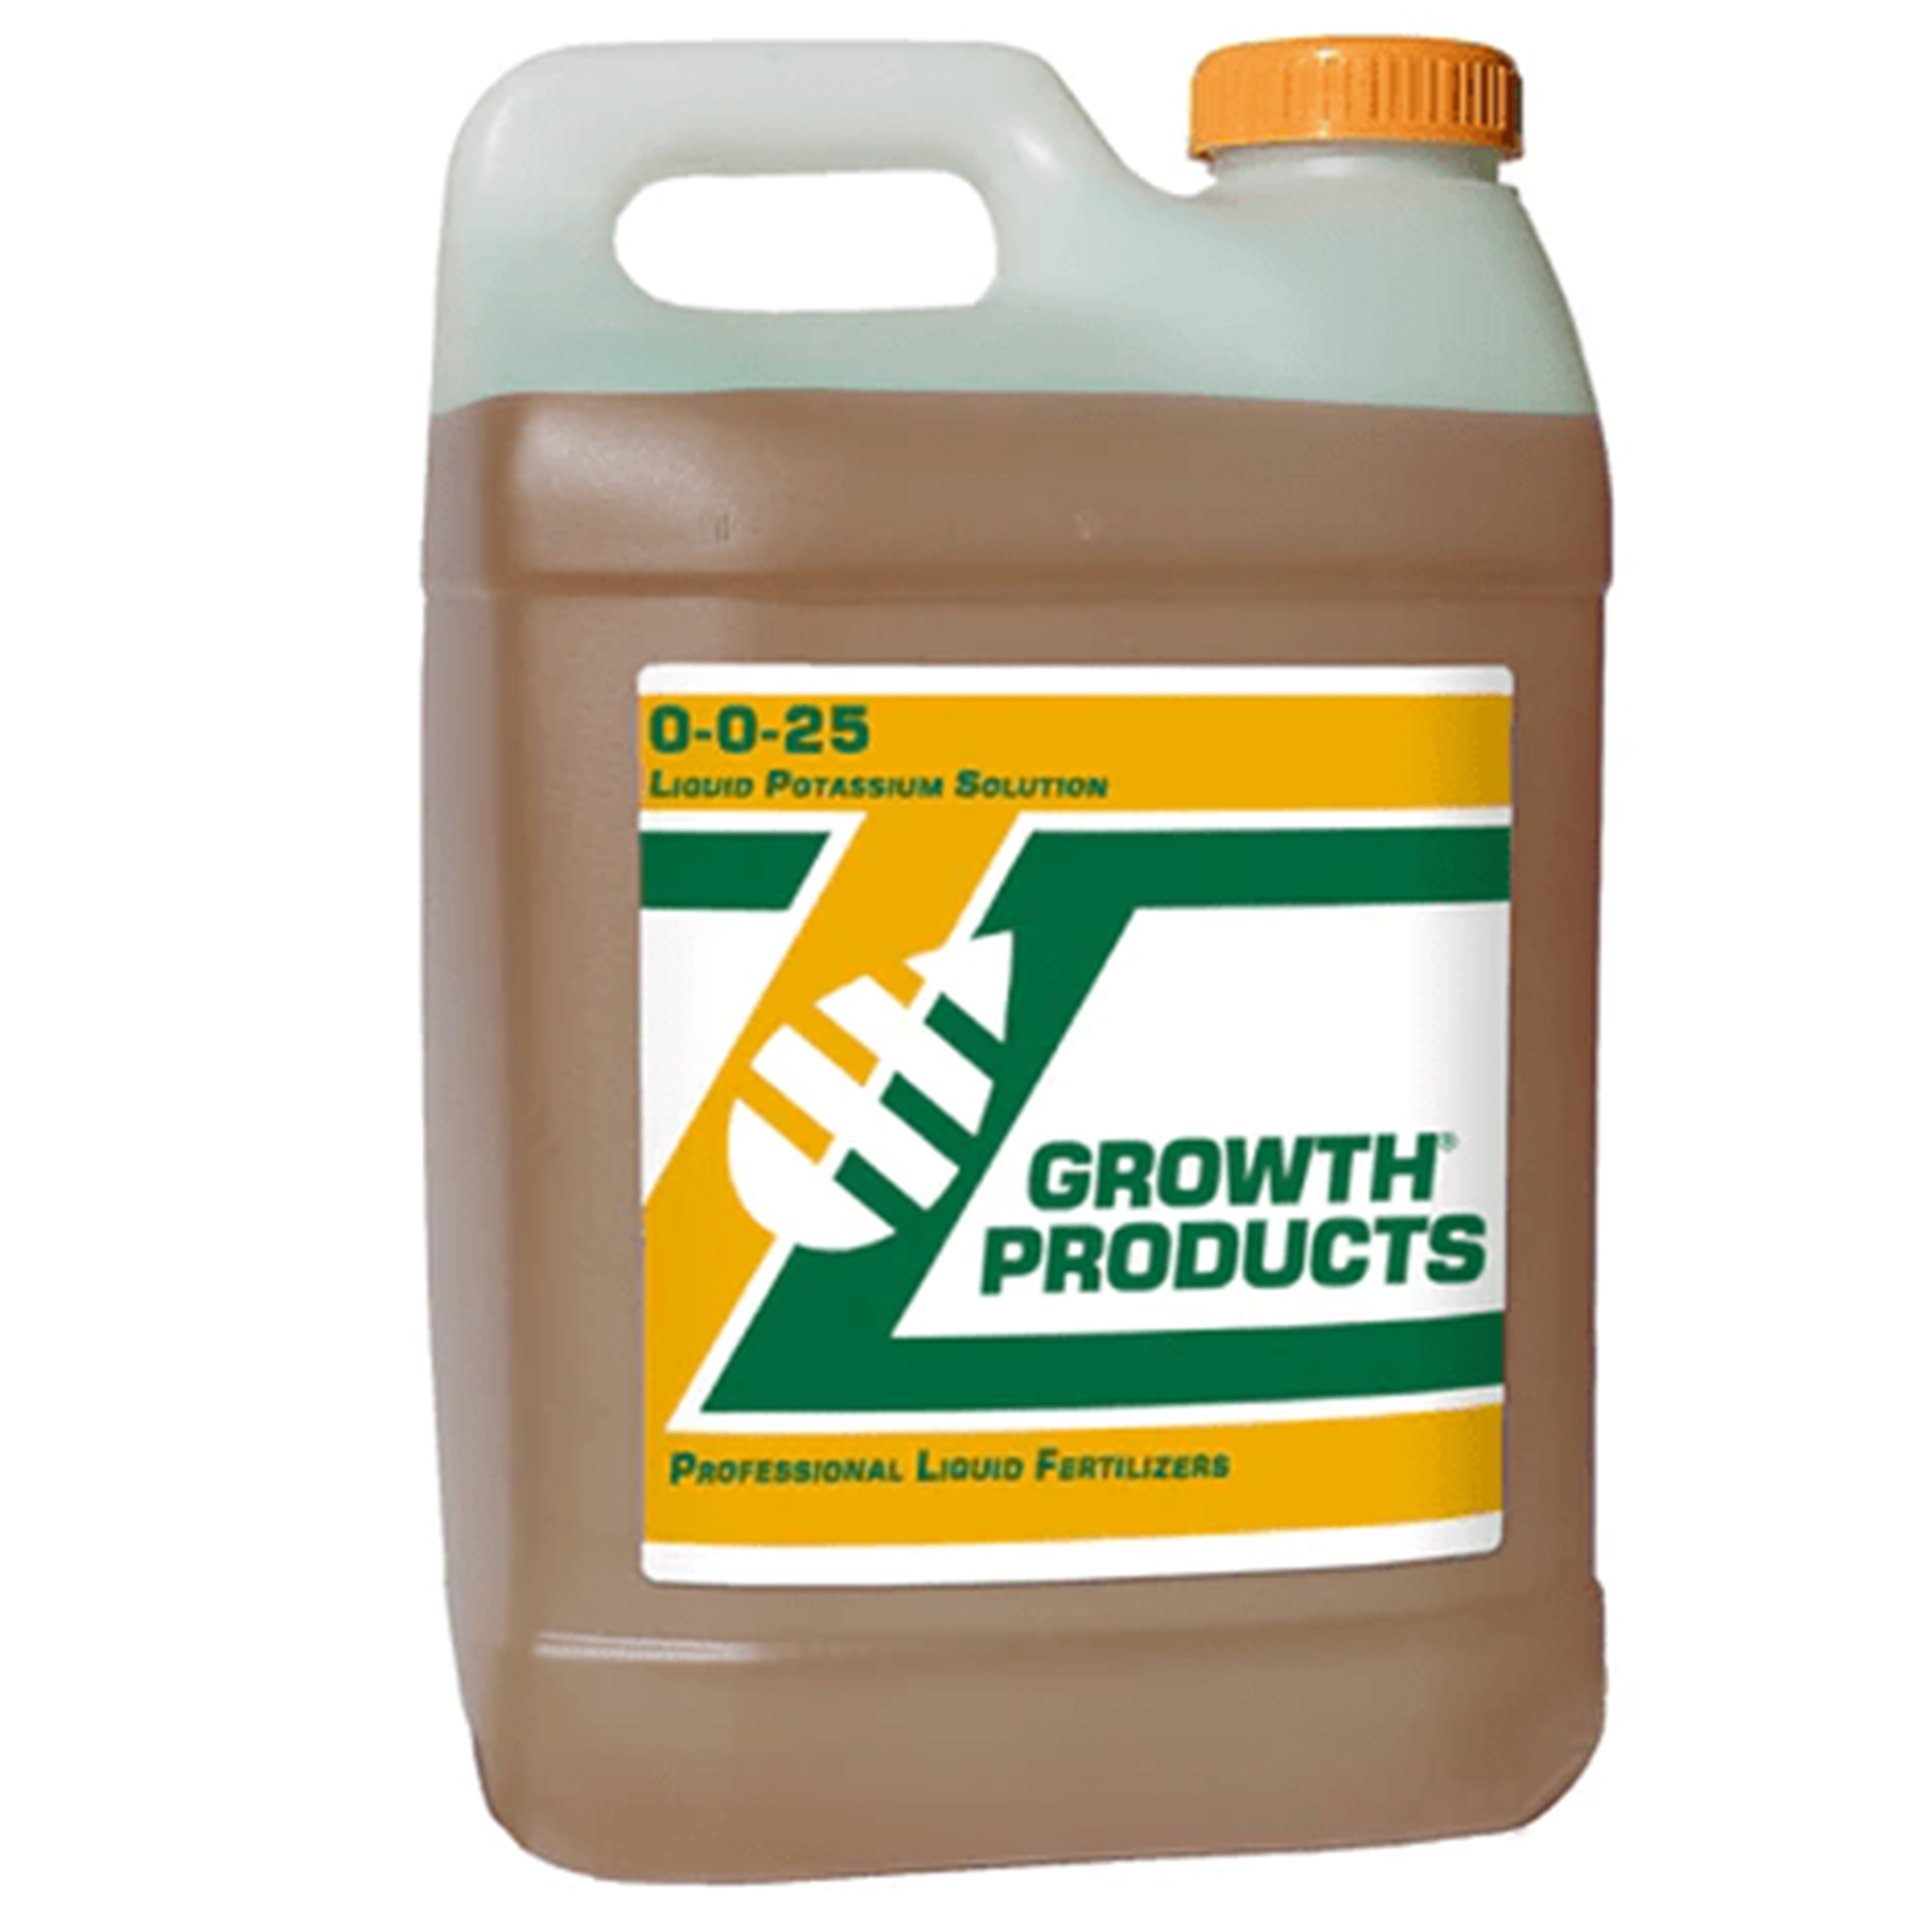 2.5 gallons 0-0-25 liquid fertilizer